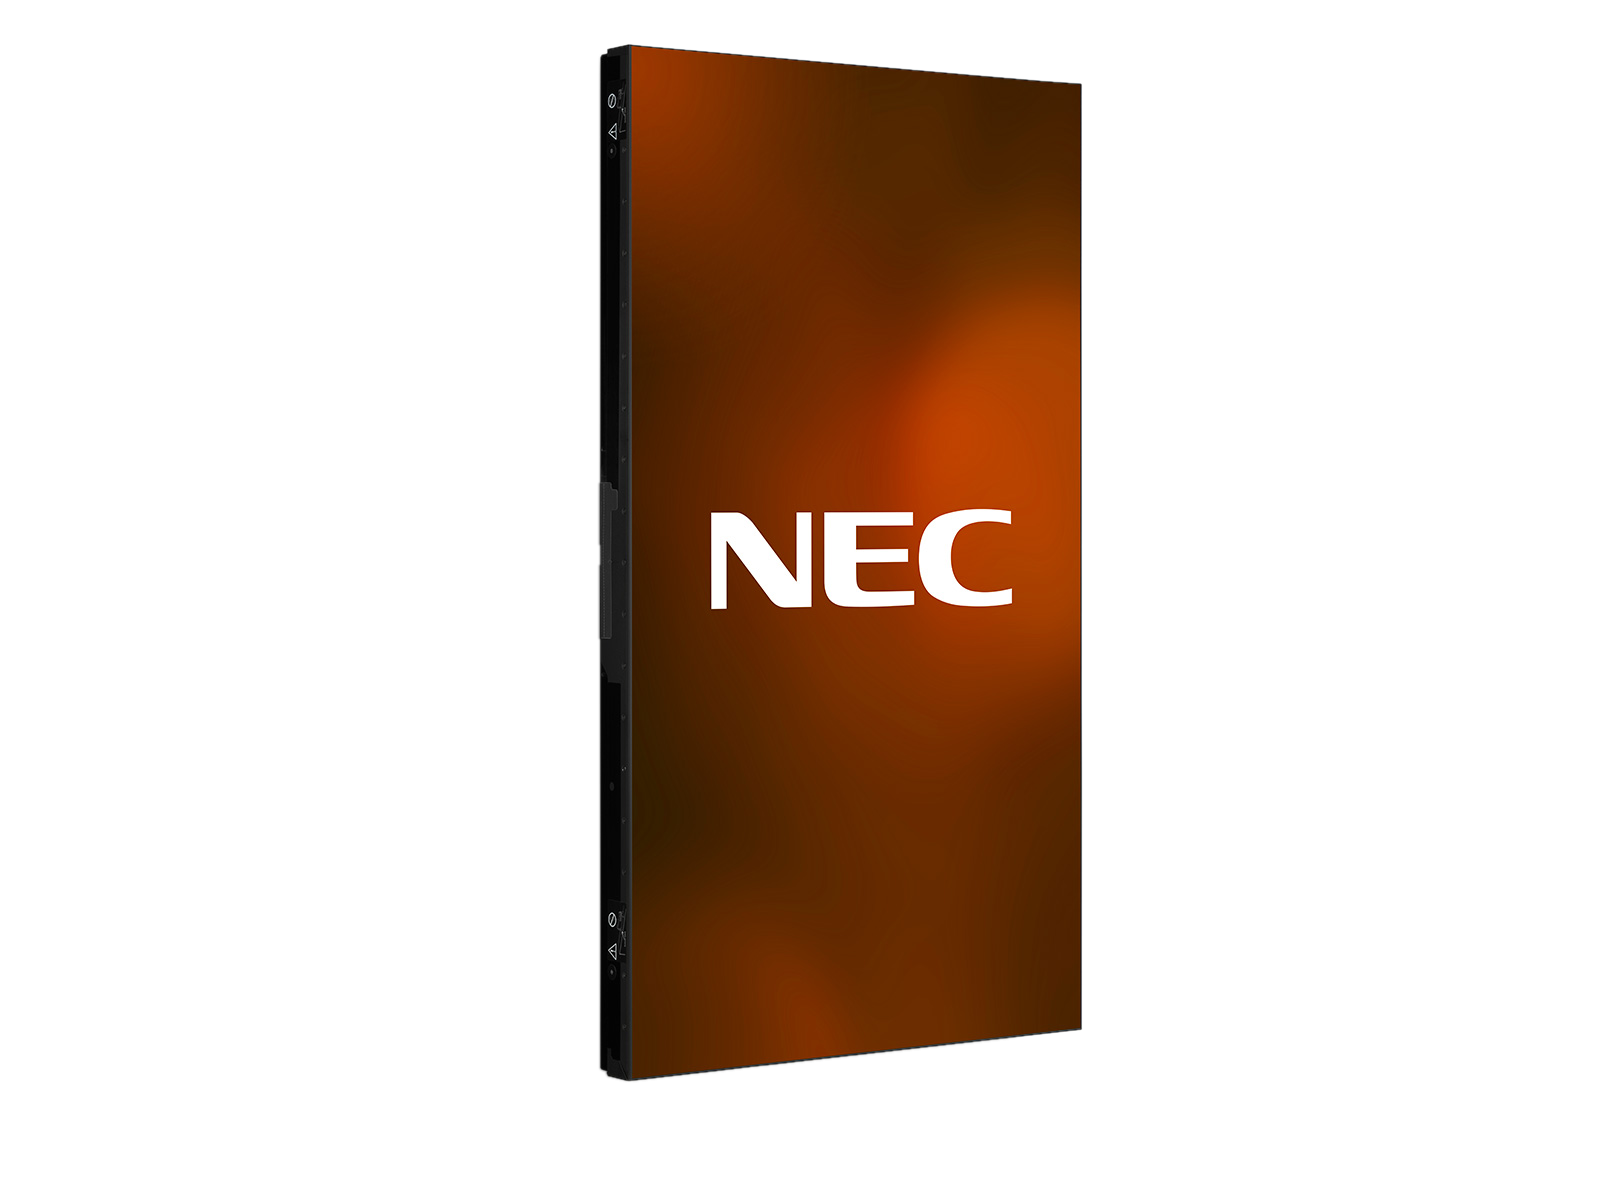 NEC_UN462A_Rt_Port_content-logo_1600x1200-4